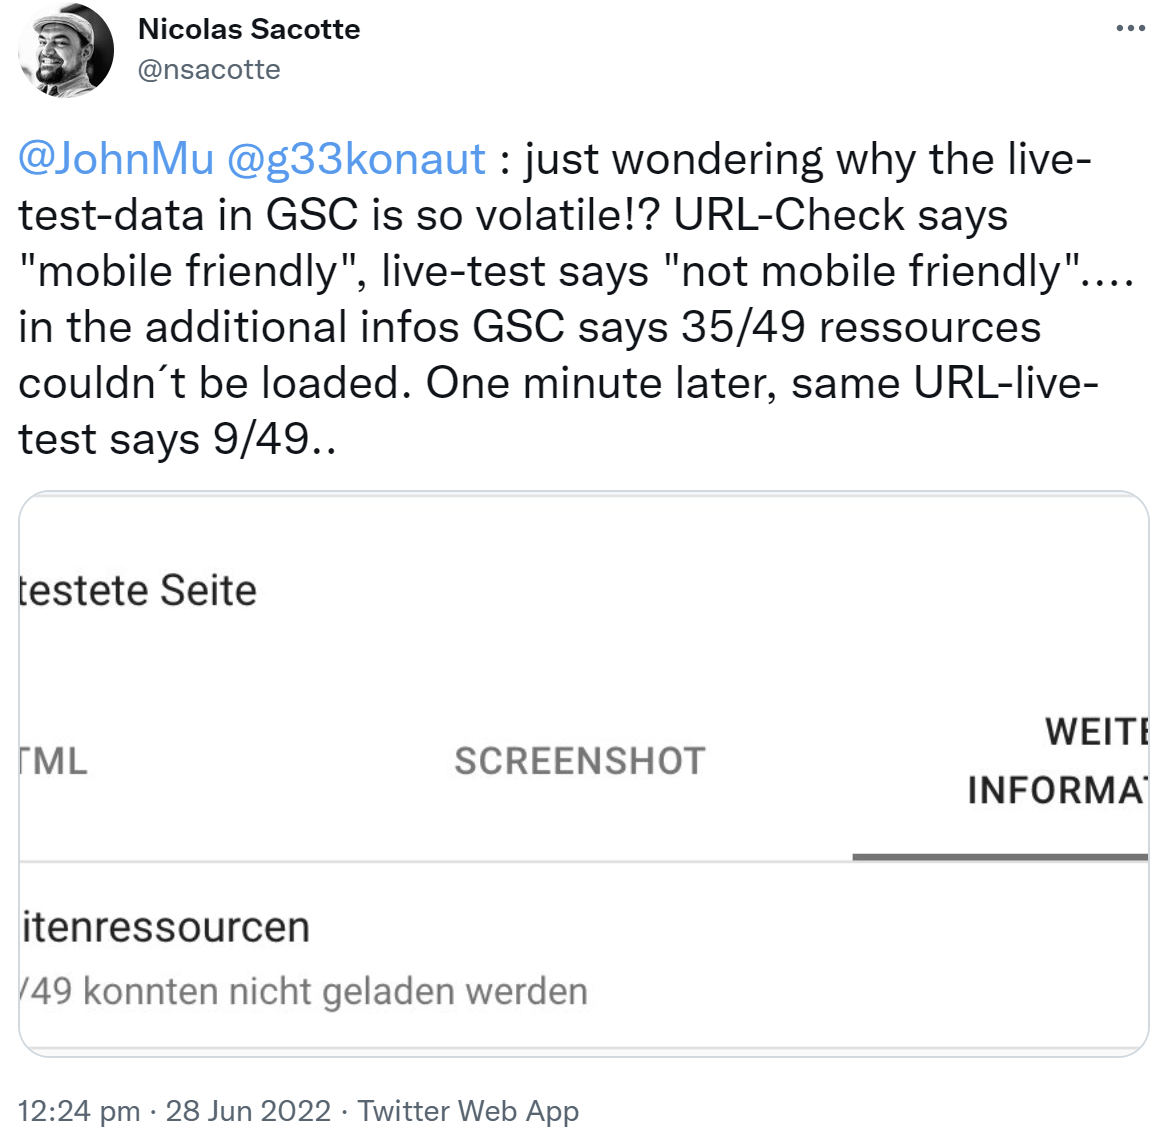 Anderes Ergebnis in Live-Daten der GSC als vom URL Checking Tool